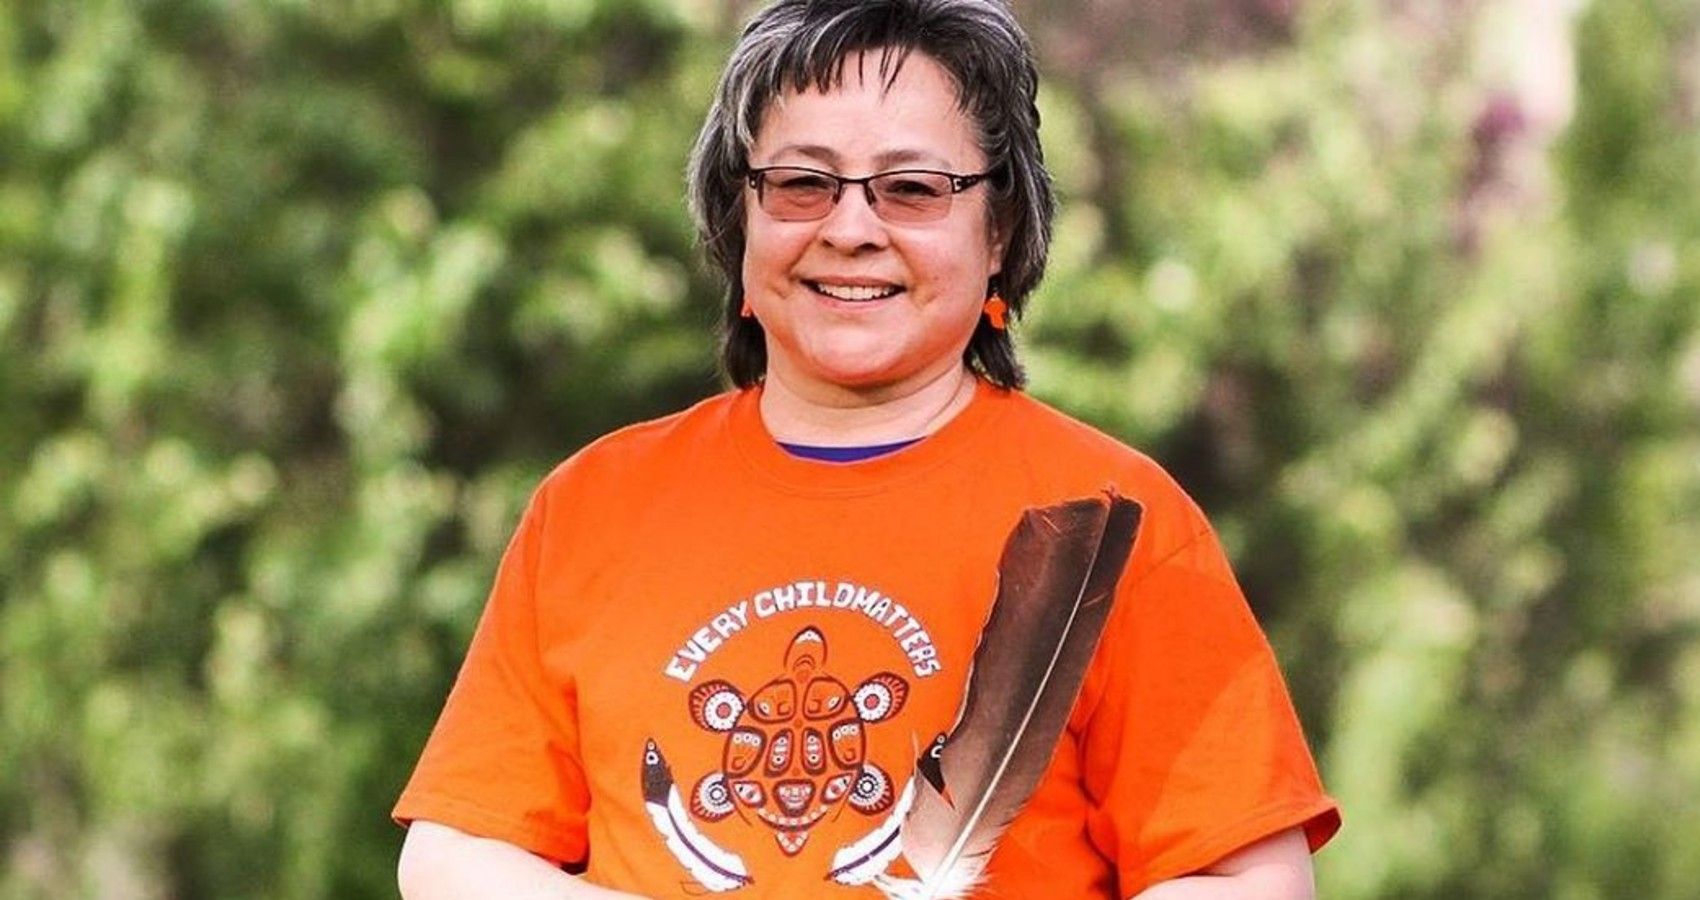 Phyllis Webstad: Khám phá câu chuyện rất đặc biệt của Phyllis Webstad - một người sống sót từ trại tập trung Indian Residential School, một phần của lịch sử dân tộc bản địa đầy nước mắt và tàn ác. Hãy xem hình ảnh liên quan đến cô làm thế nào để tìm hiểu thêm về cuộc đời cô.